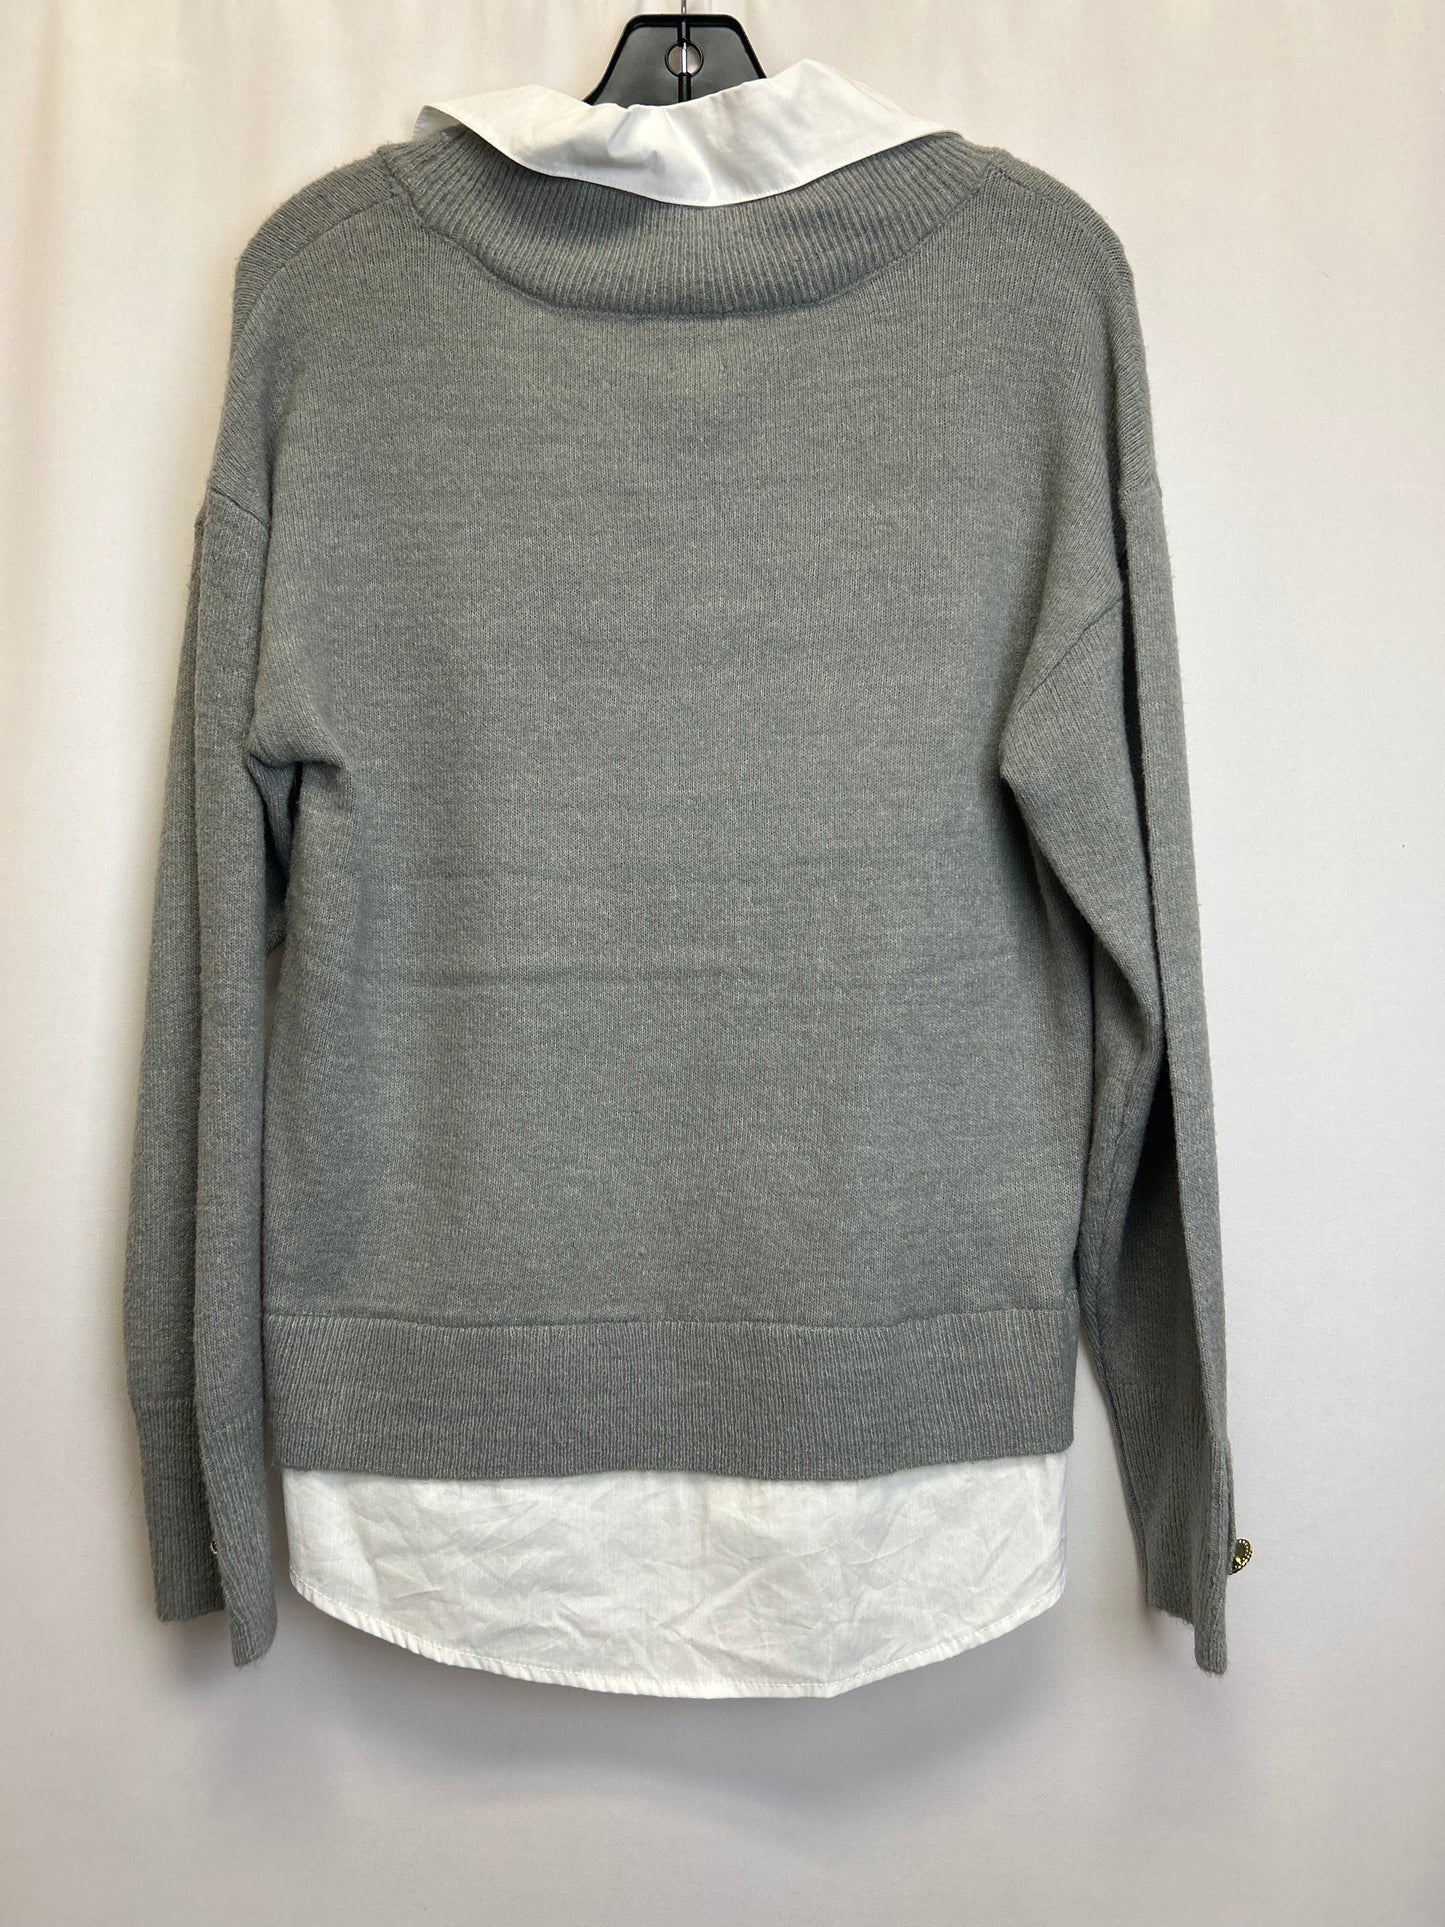 Sweater By Anne Klein  Size: M